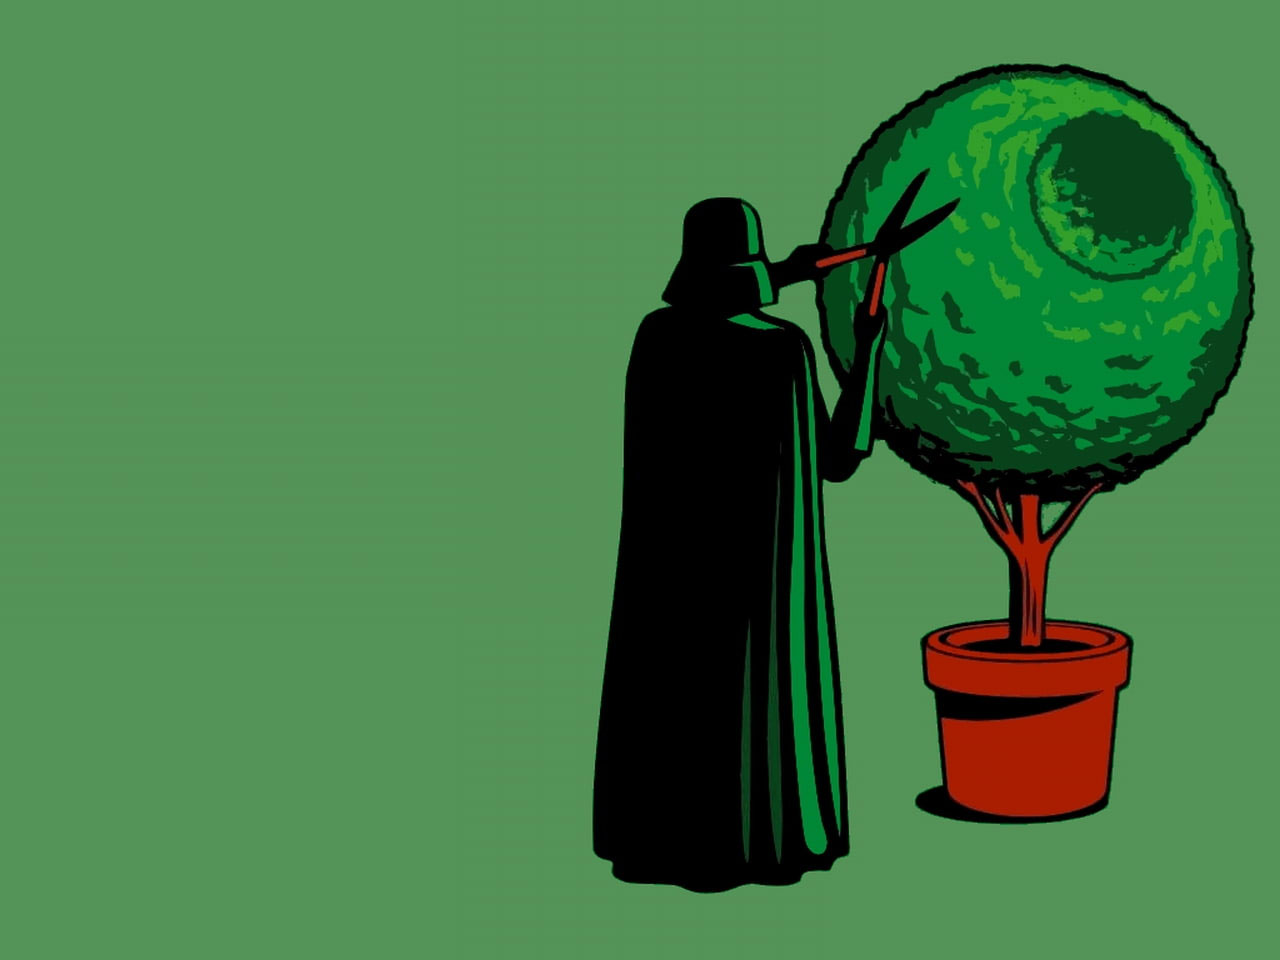 Wallpaper Star Wars Darth Vader Funny Alternative Art Come